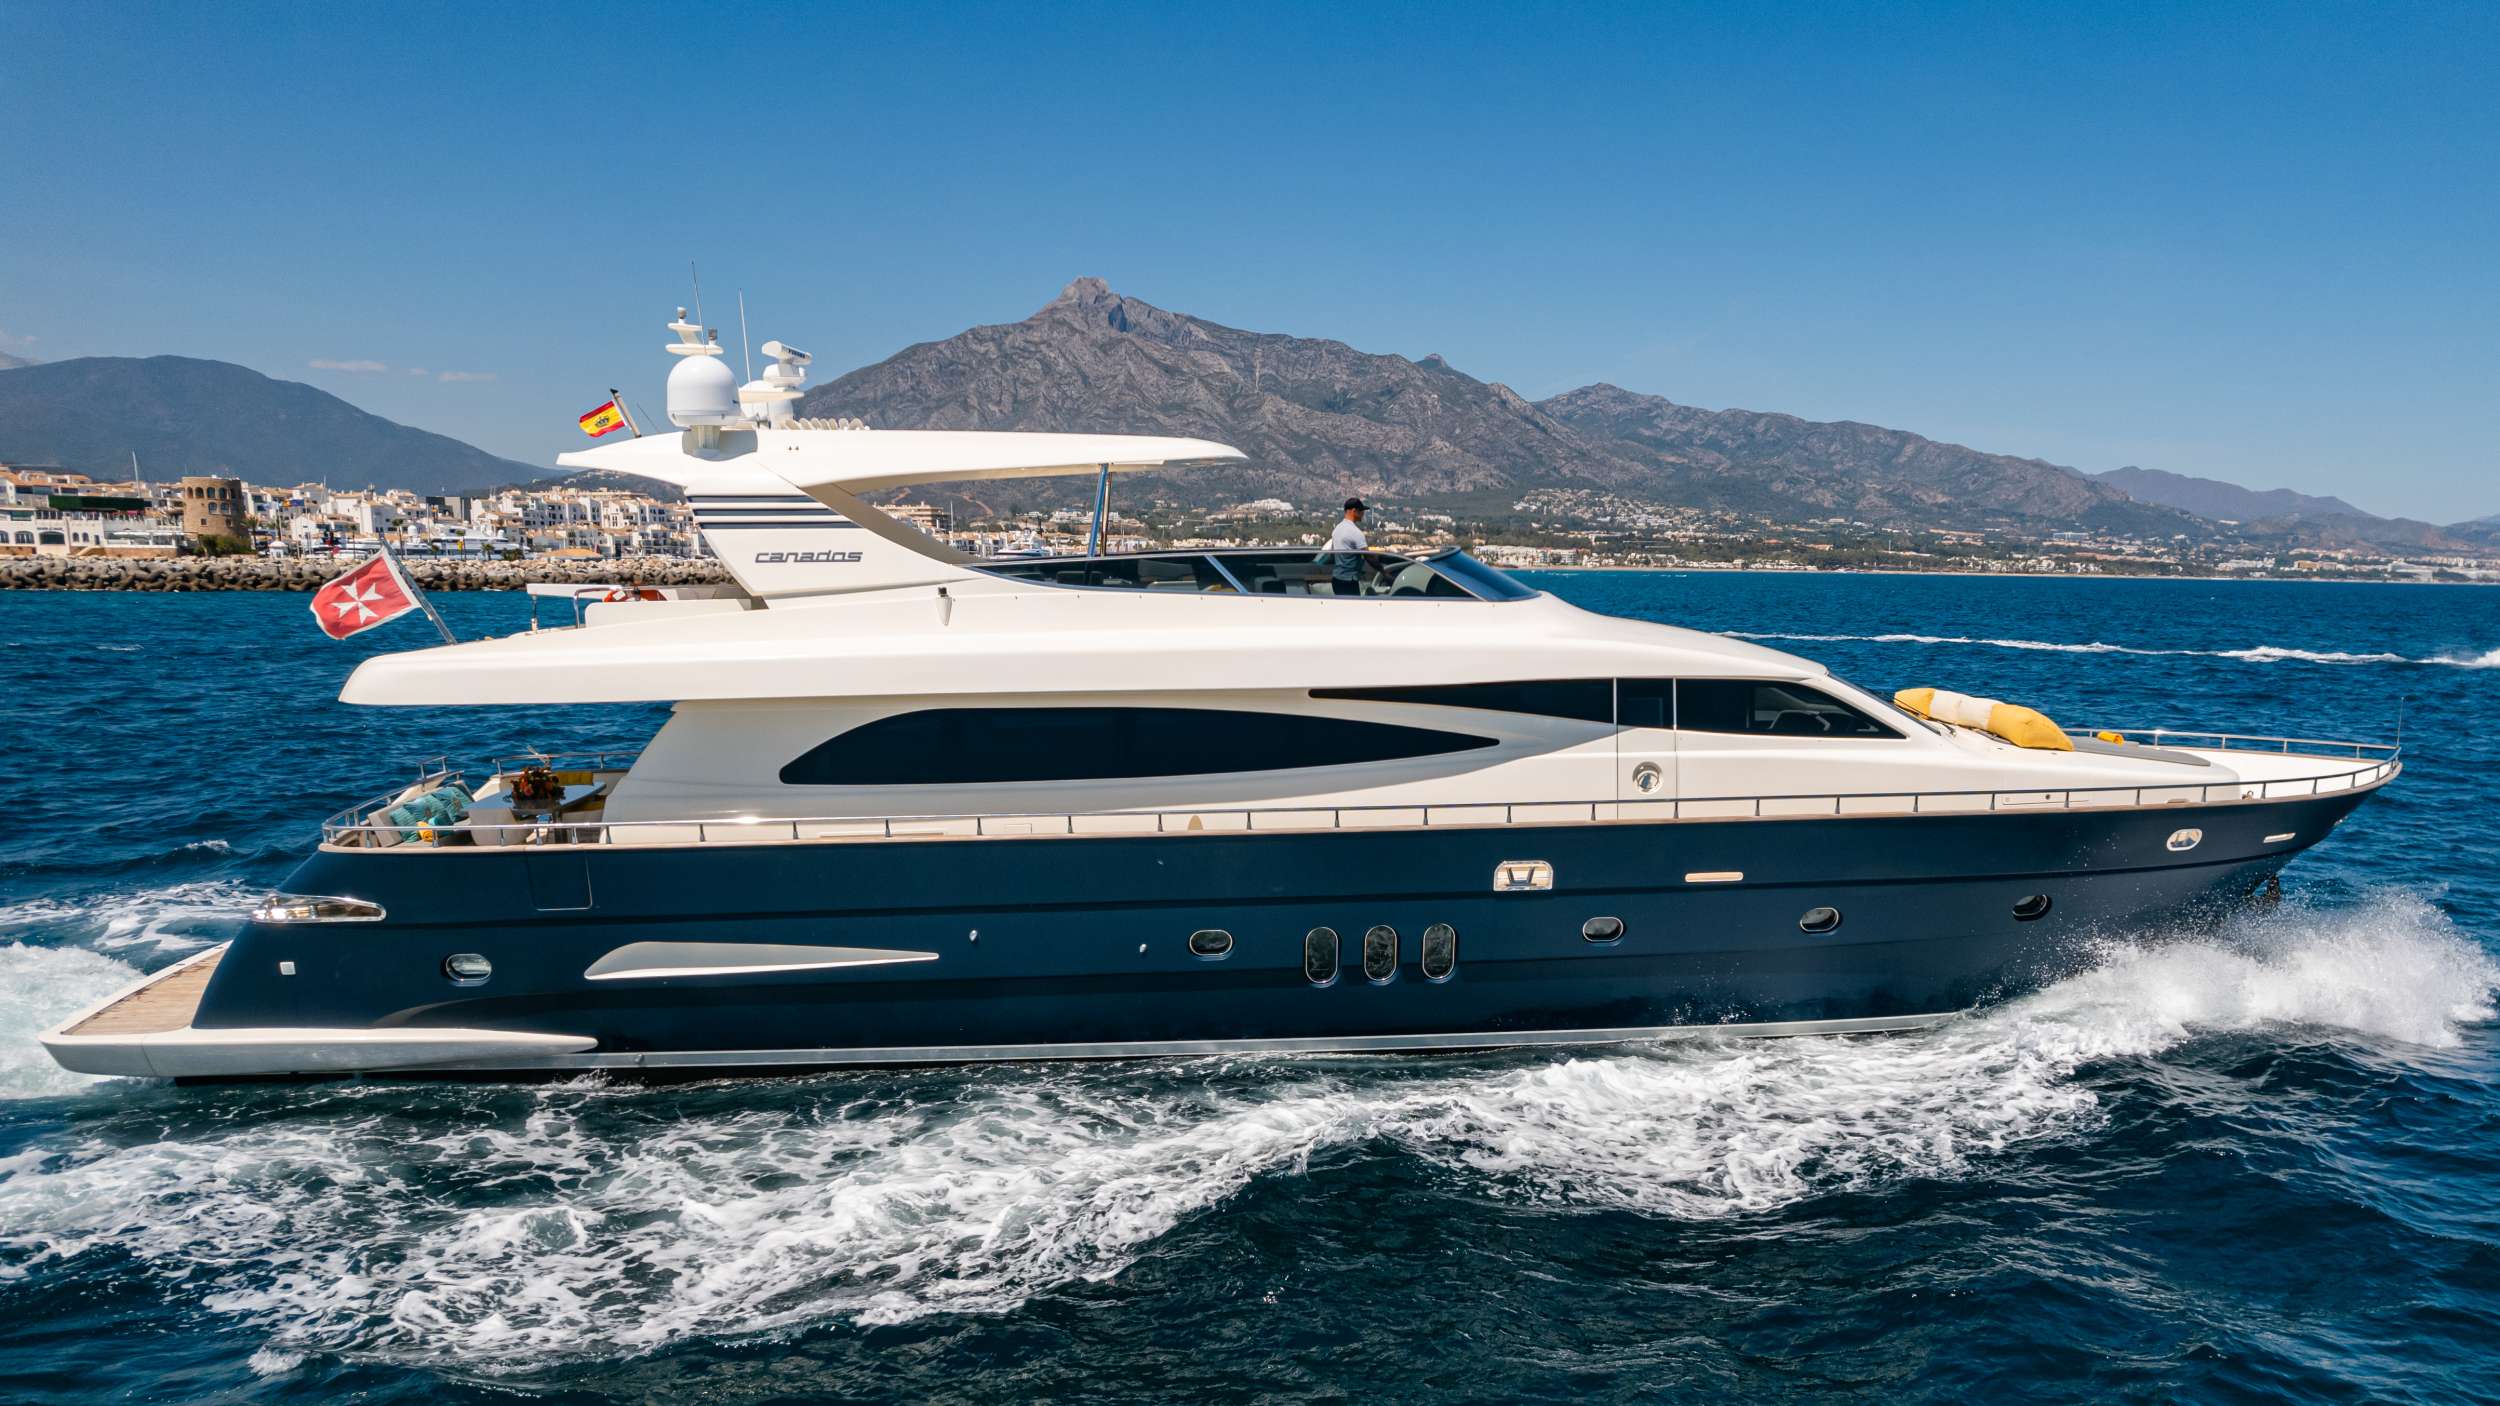 Fourteen - Yacht Charter Vilajoyosa & Boat hire in Balearics & Spain 1